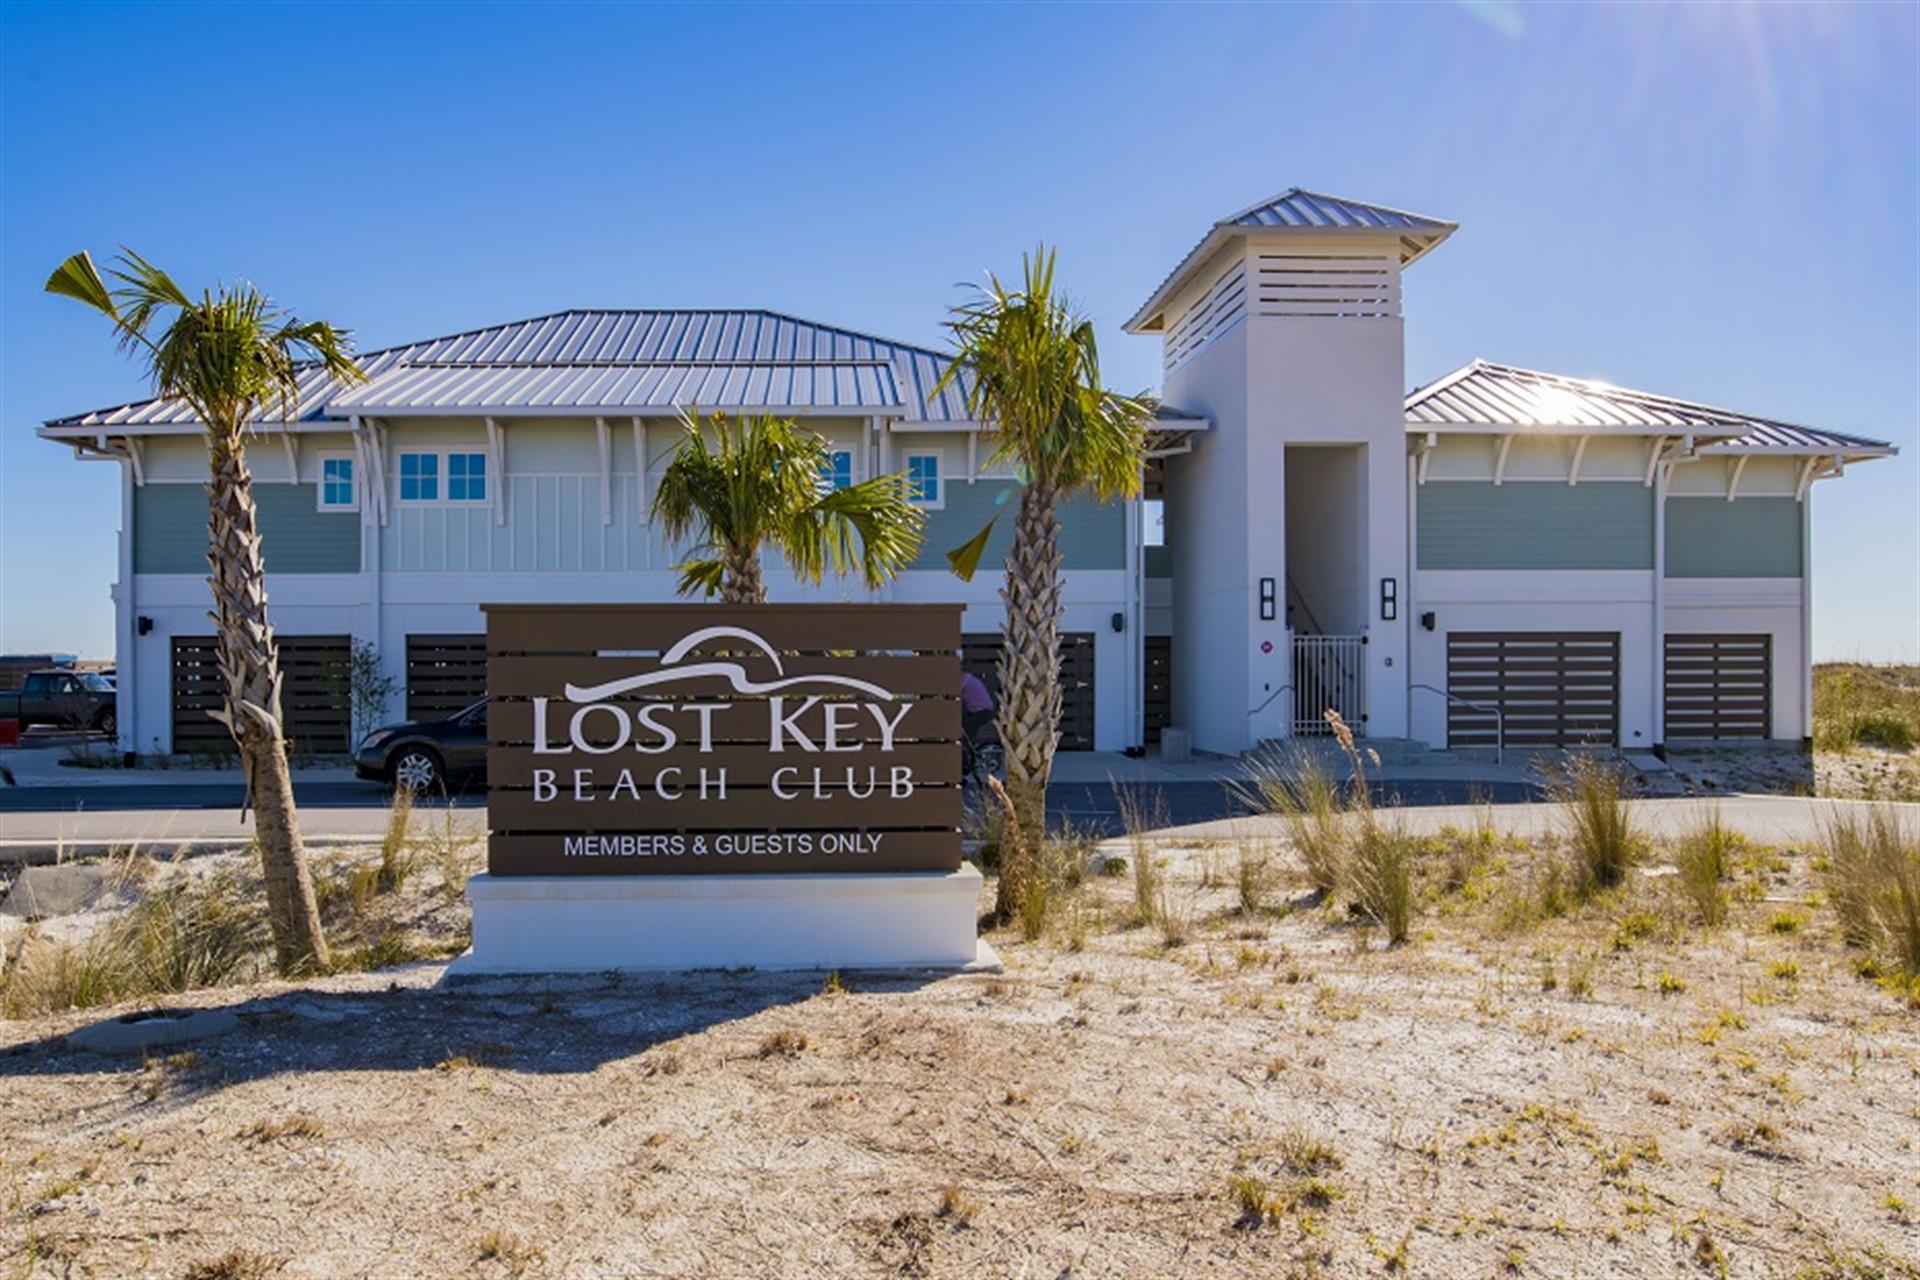 Lost key golf & beach club